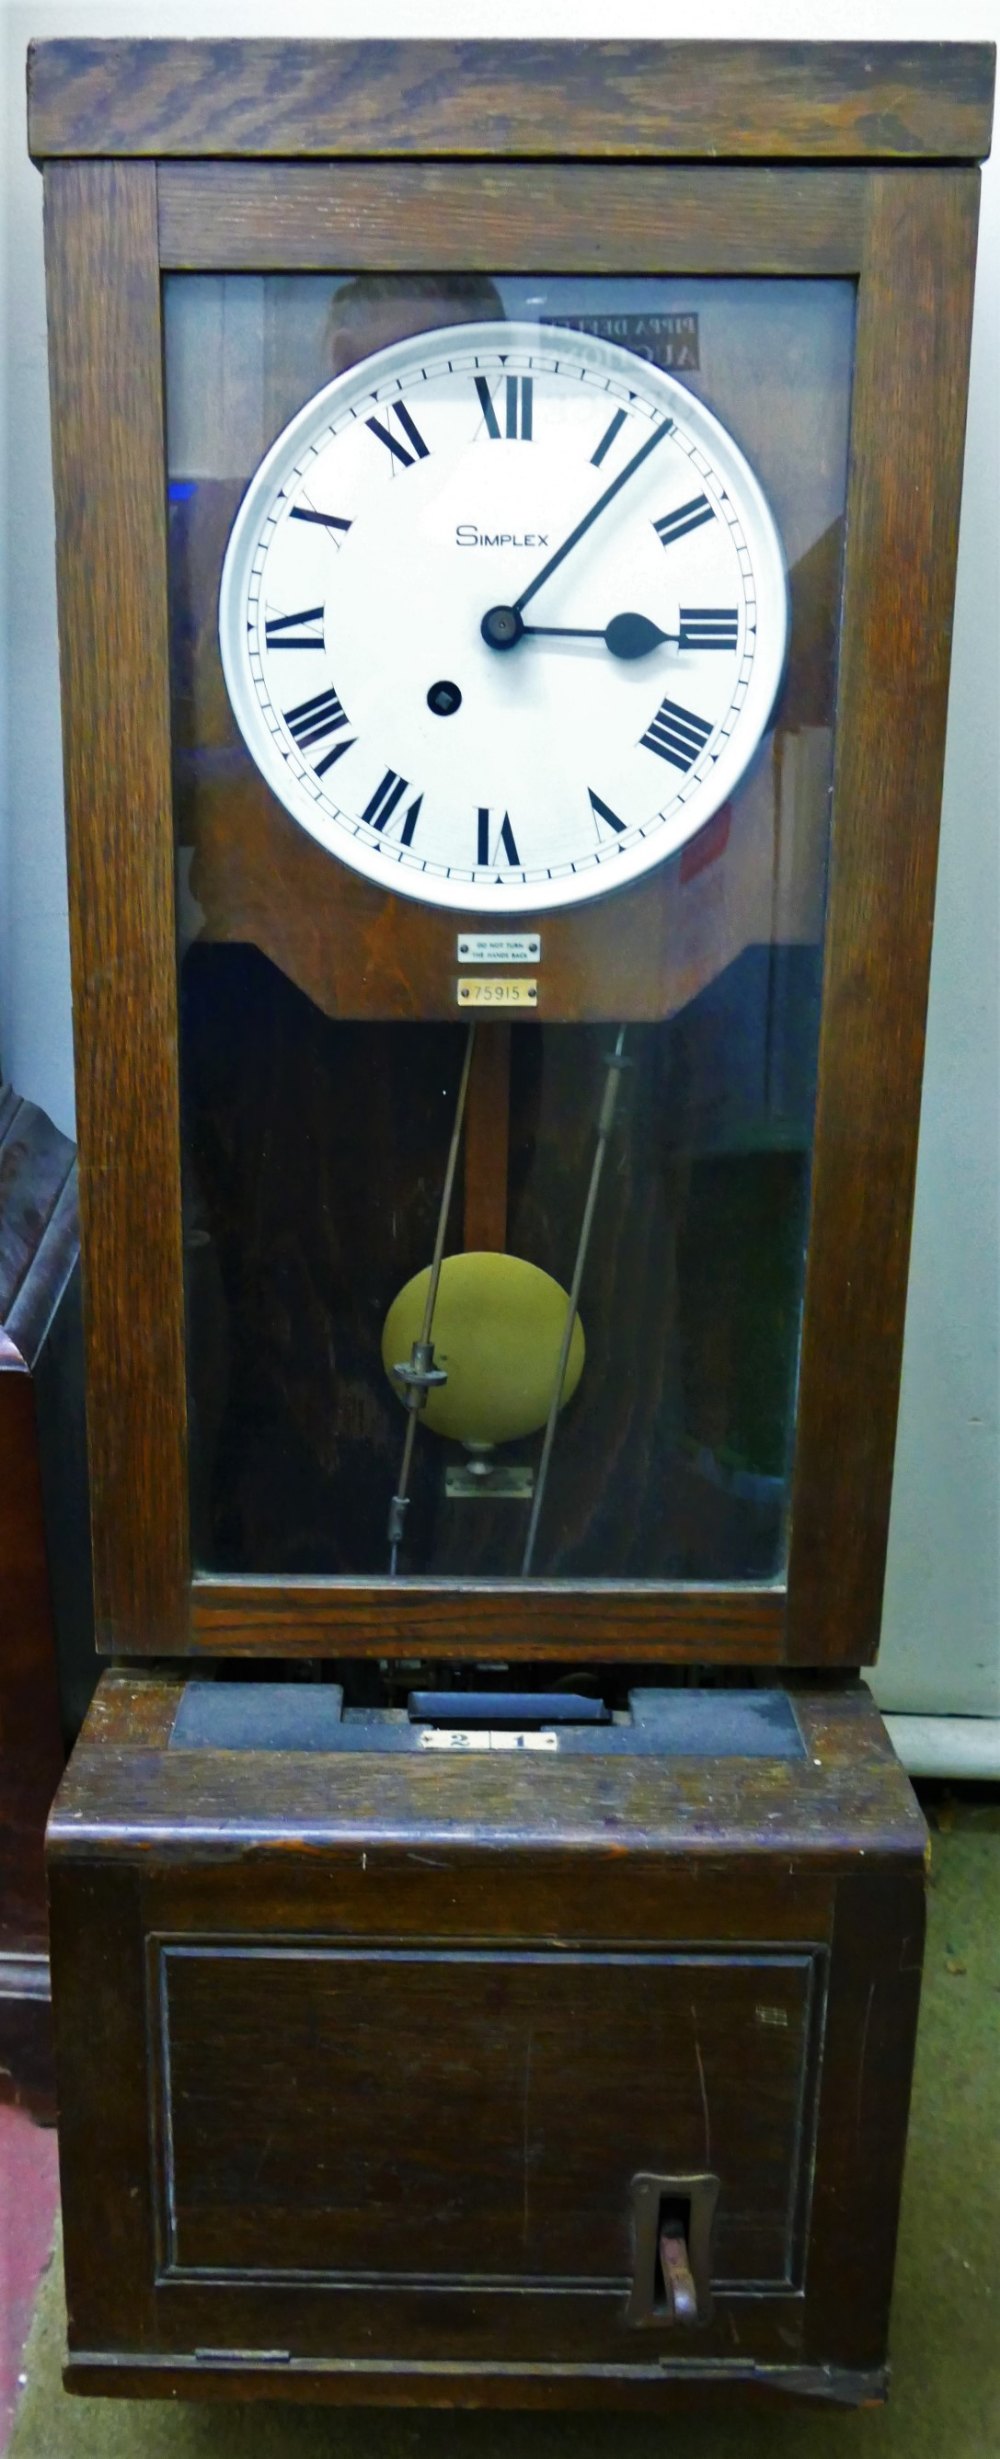 A Simplex oak cased clocking in clock, numbered 75915,